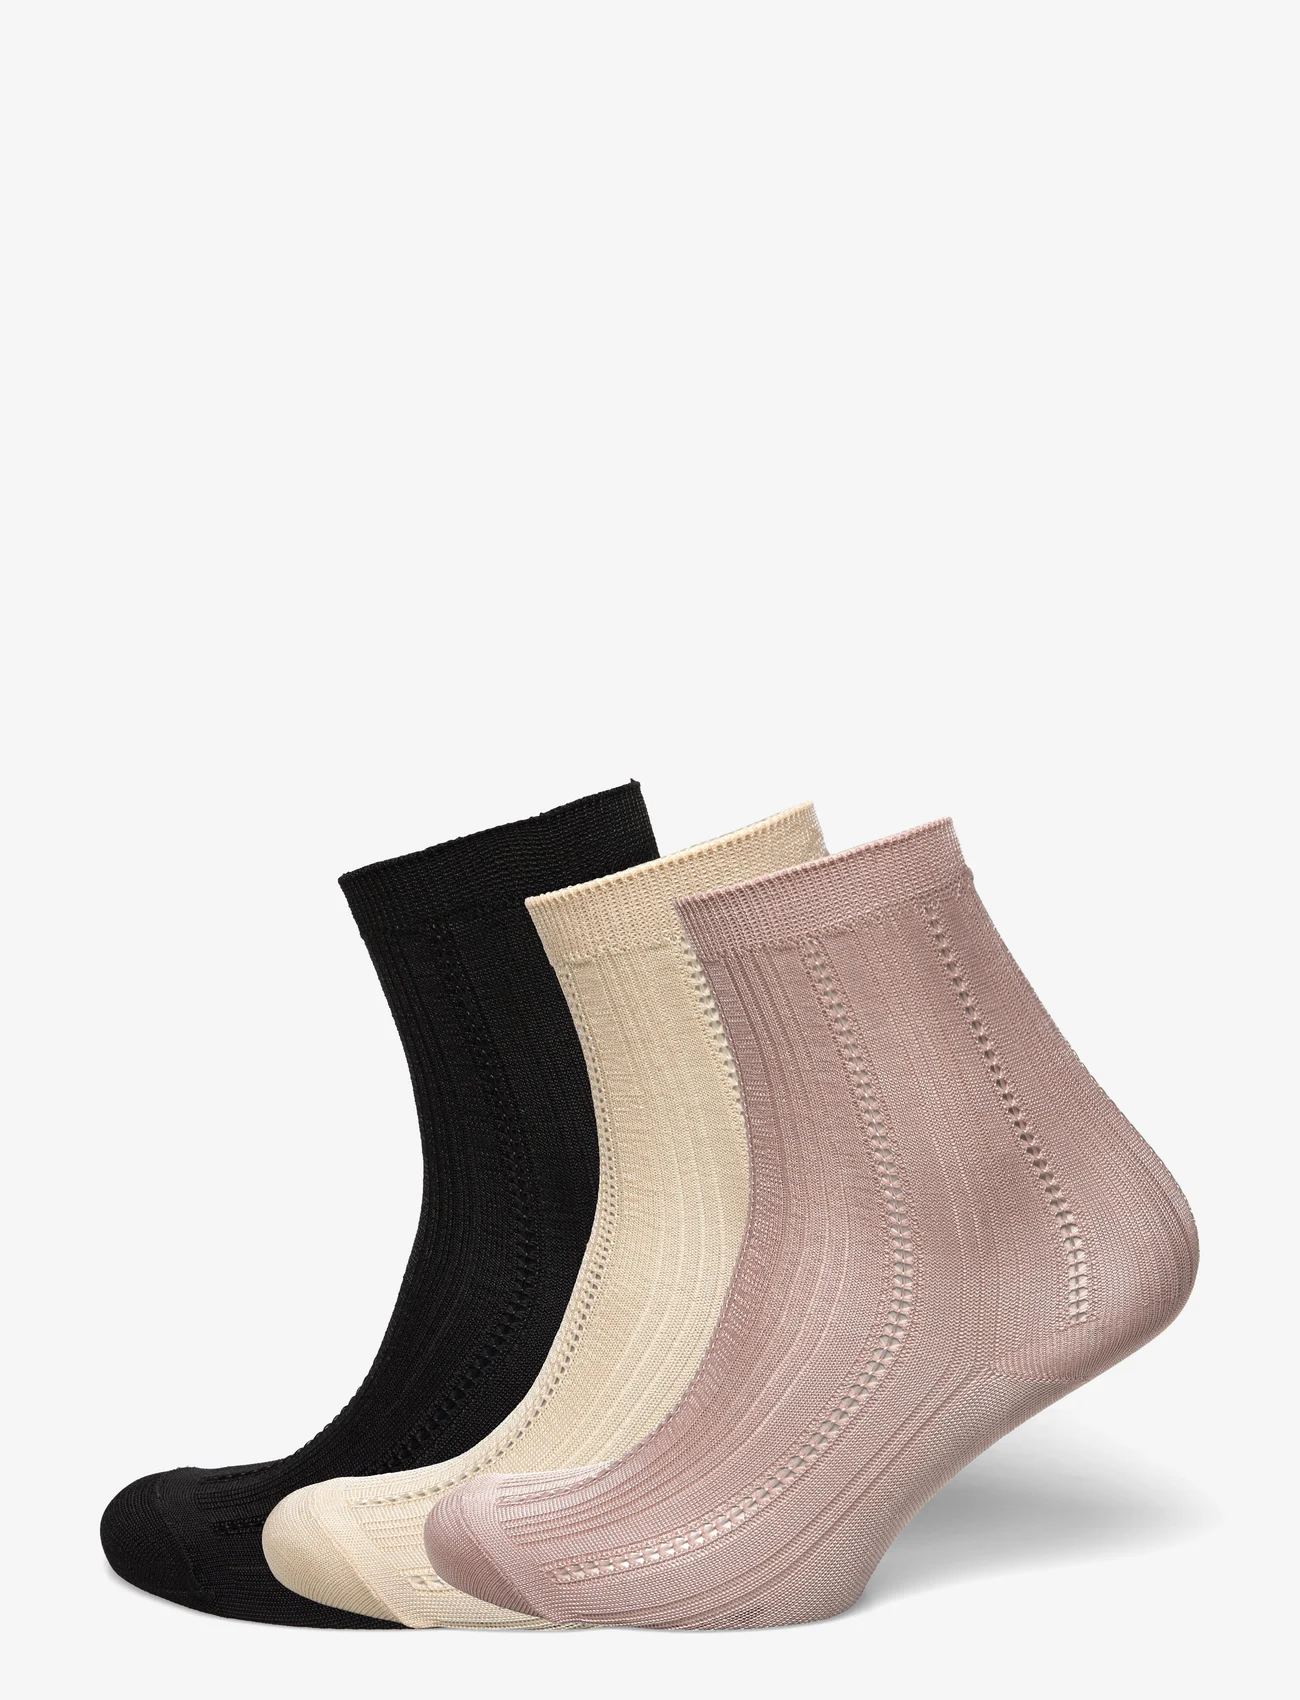 Becksöndergaard - Solid Drake Sock 3 Pack - laveste priser - black/sand/fawn - 0